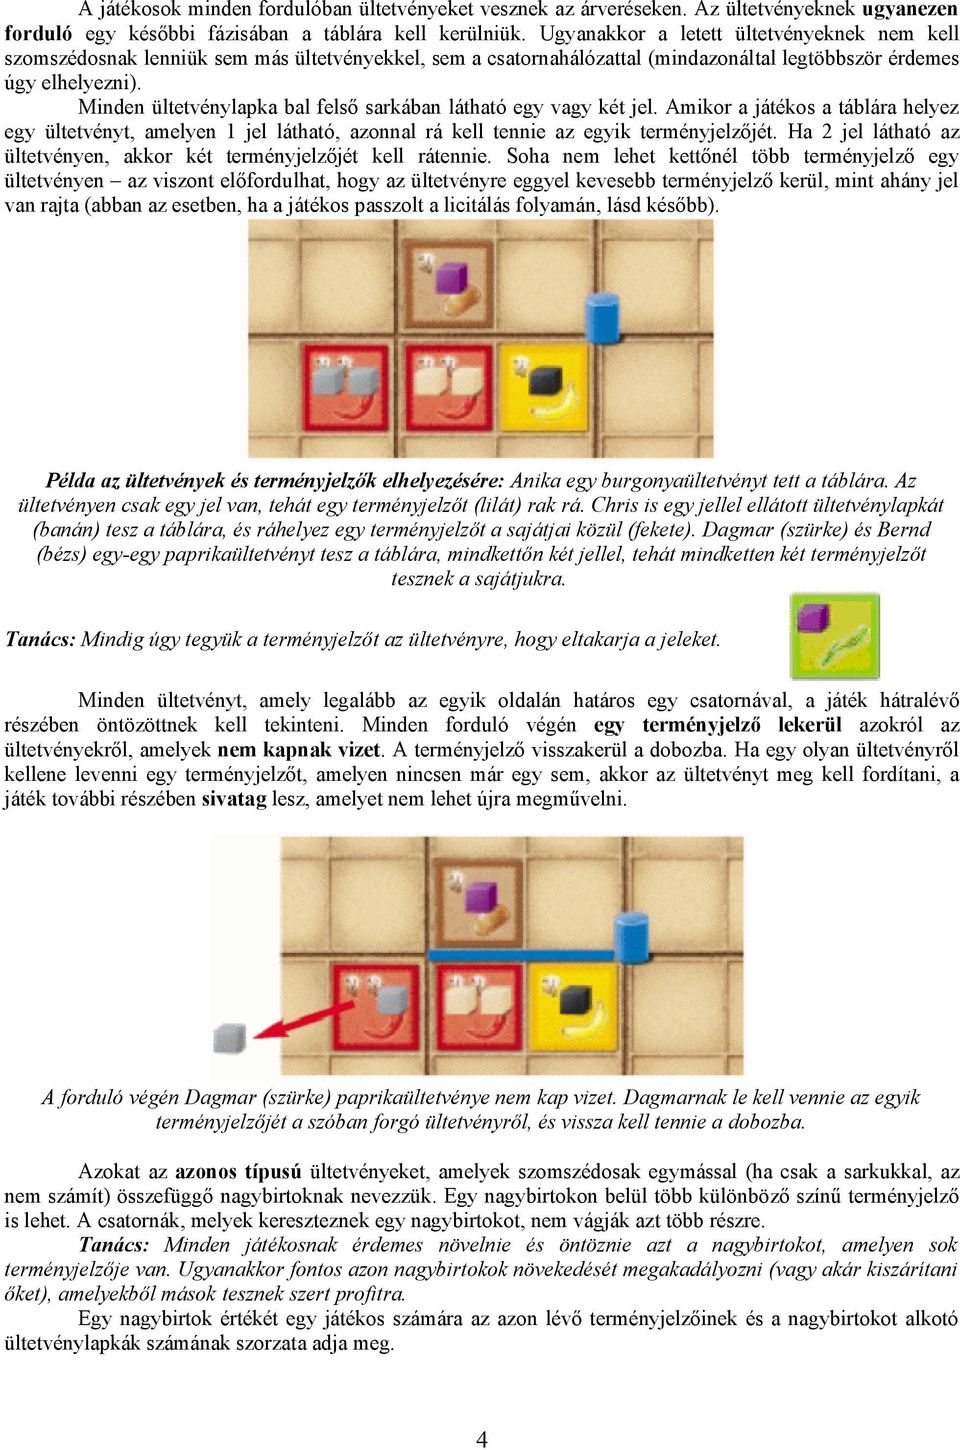 Minden ültetvénylapka bal felső sarkában látható egy vagy két jel. Amikor a játékos a táblára helyez egy ültetvényt, amelyen 1 jel látható, azonnal rá kell tennie az egyik terményjelzőjét.